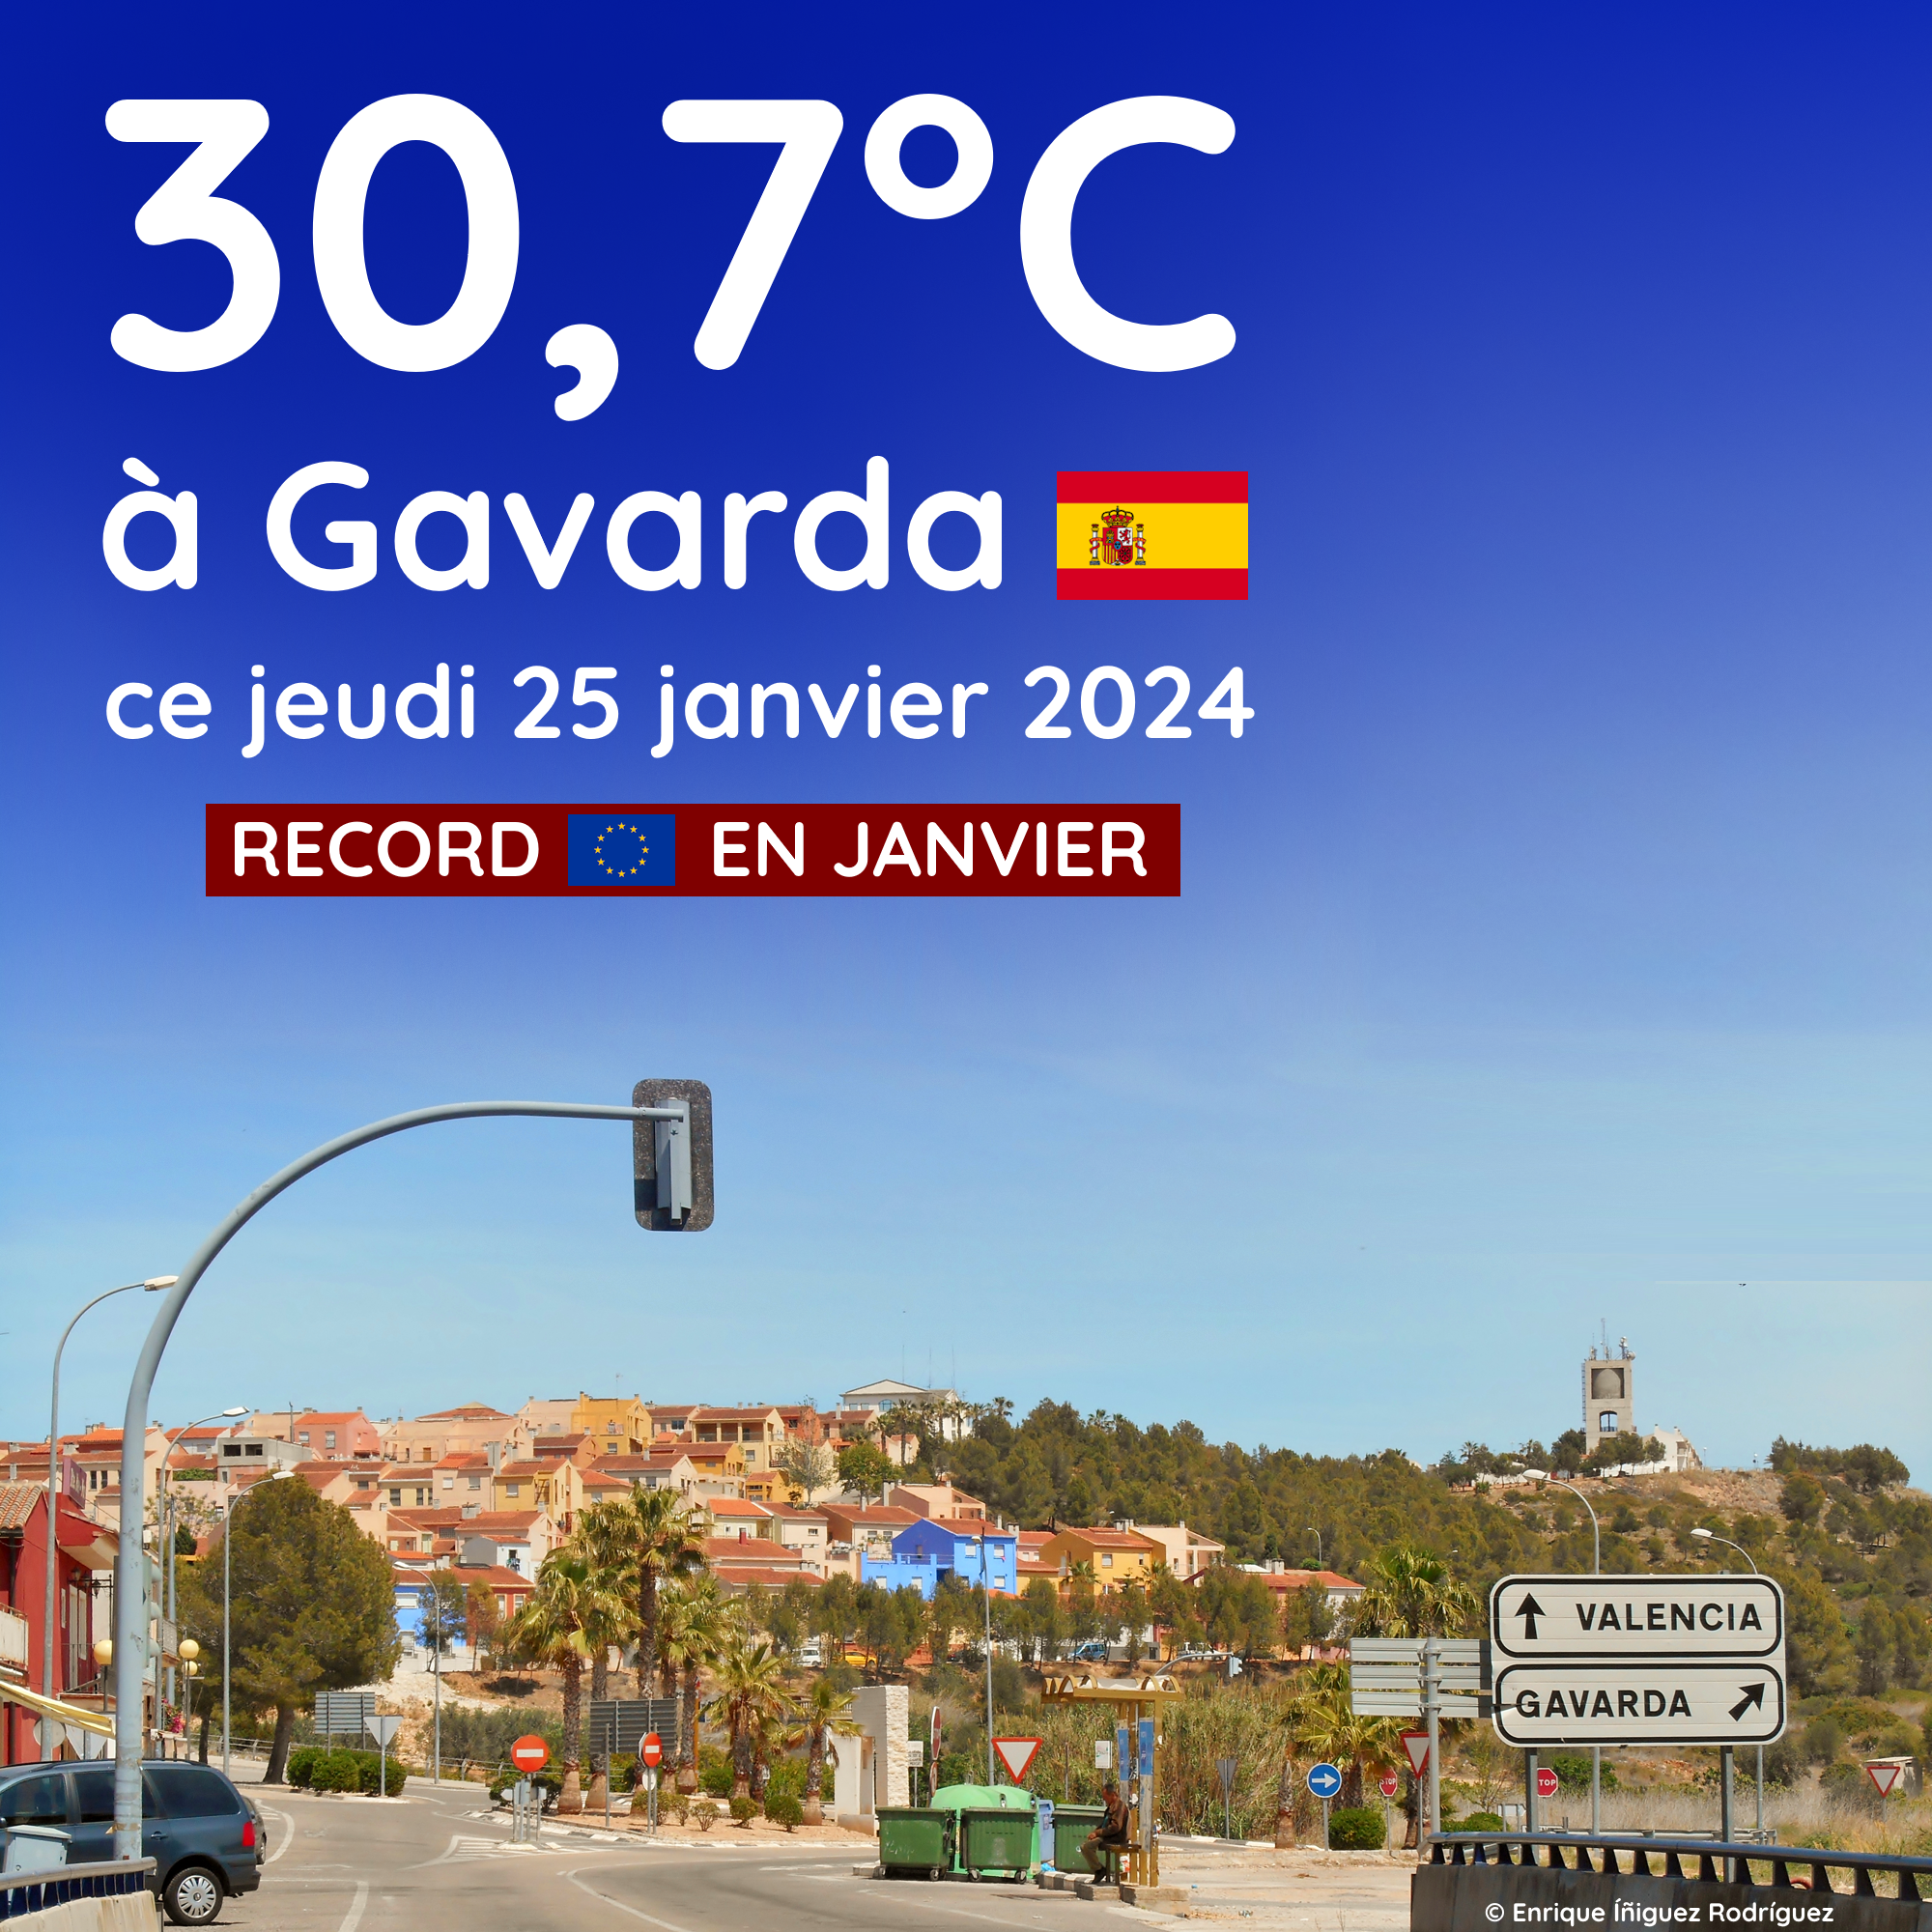 30,7°C à Gavarda en Espagne ce jeudi 25 janvier 2024, un record européen ! 